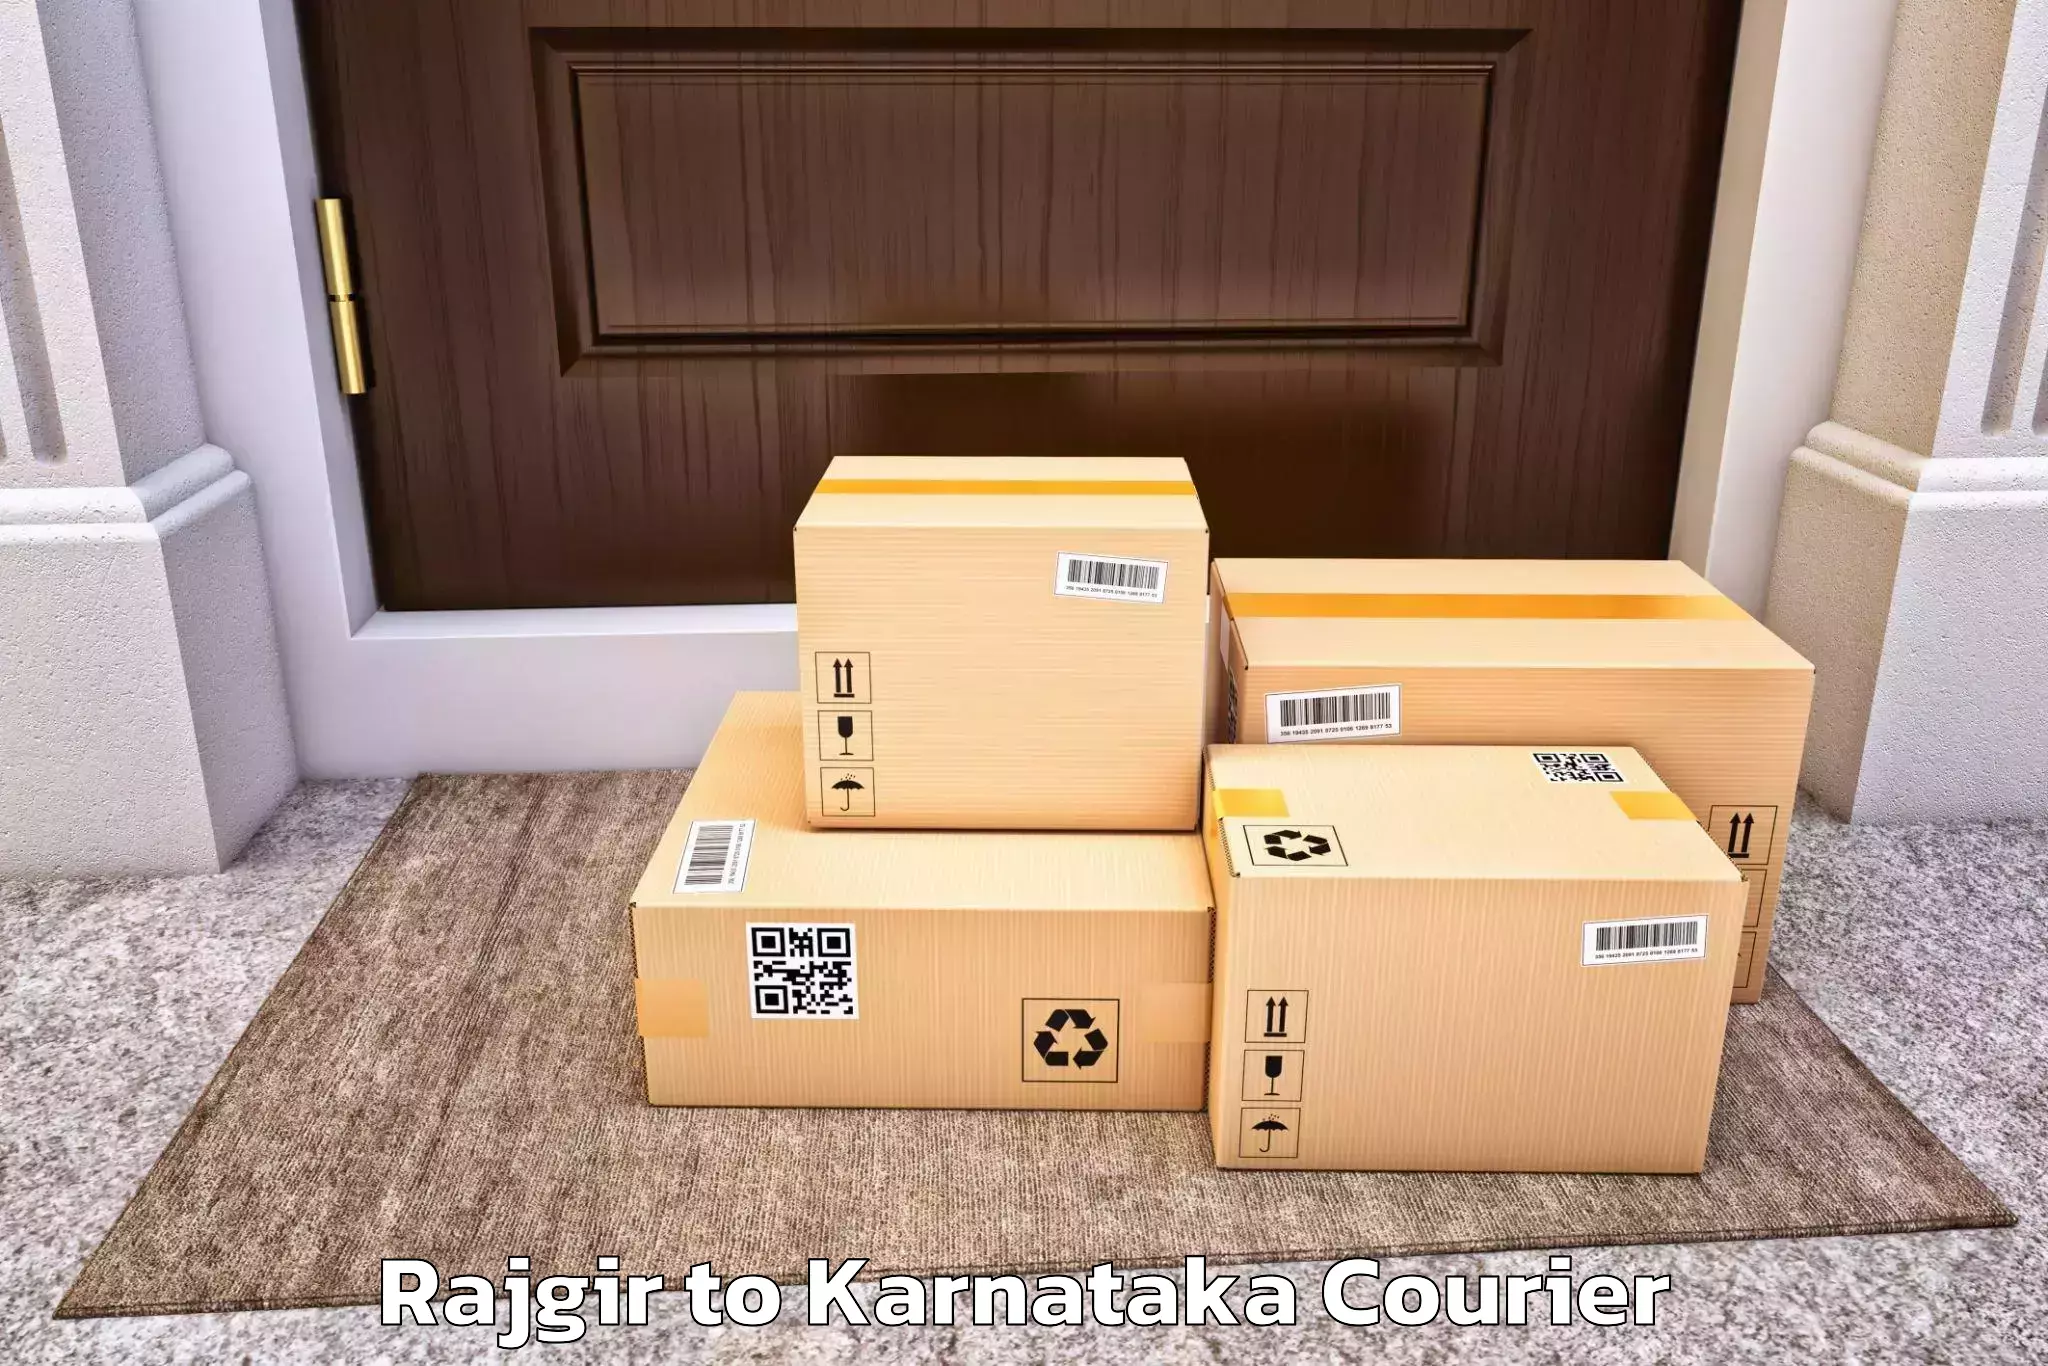 Professional home movers Rajgir to Kolar